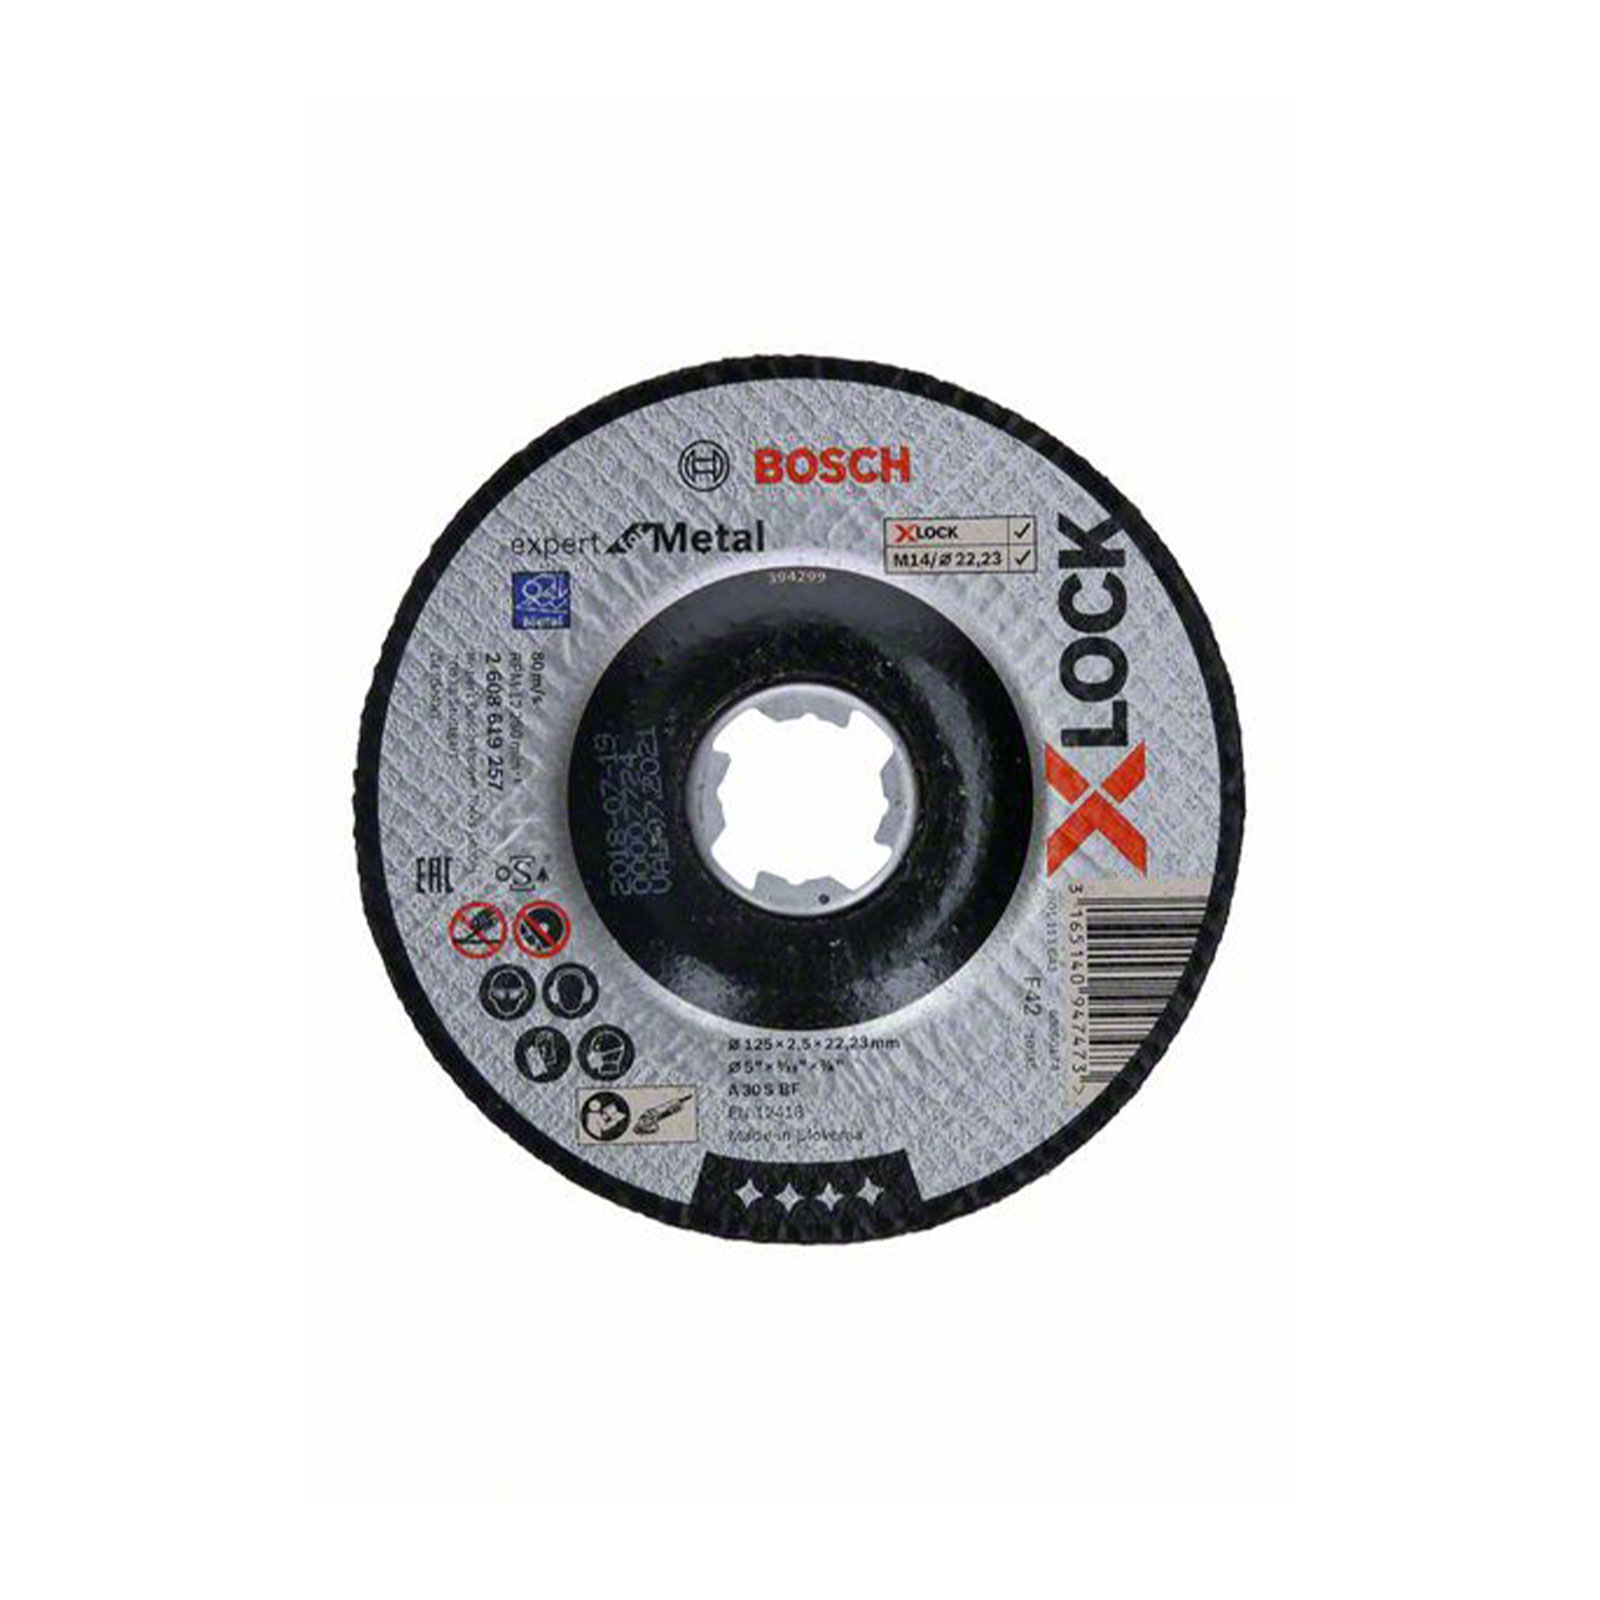 Bosch Professional X-LOCK Expert for Metal 125 x 2,5 x 22,23 Trennscheibe gekröpft